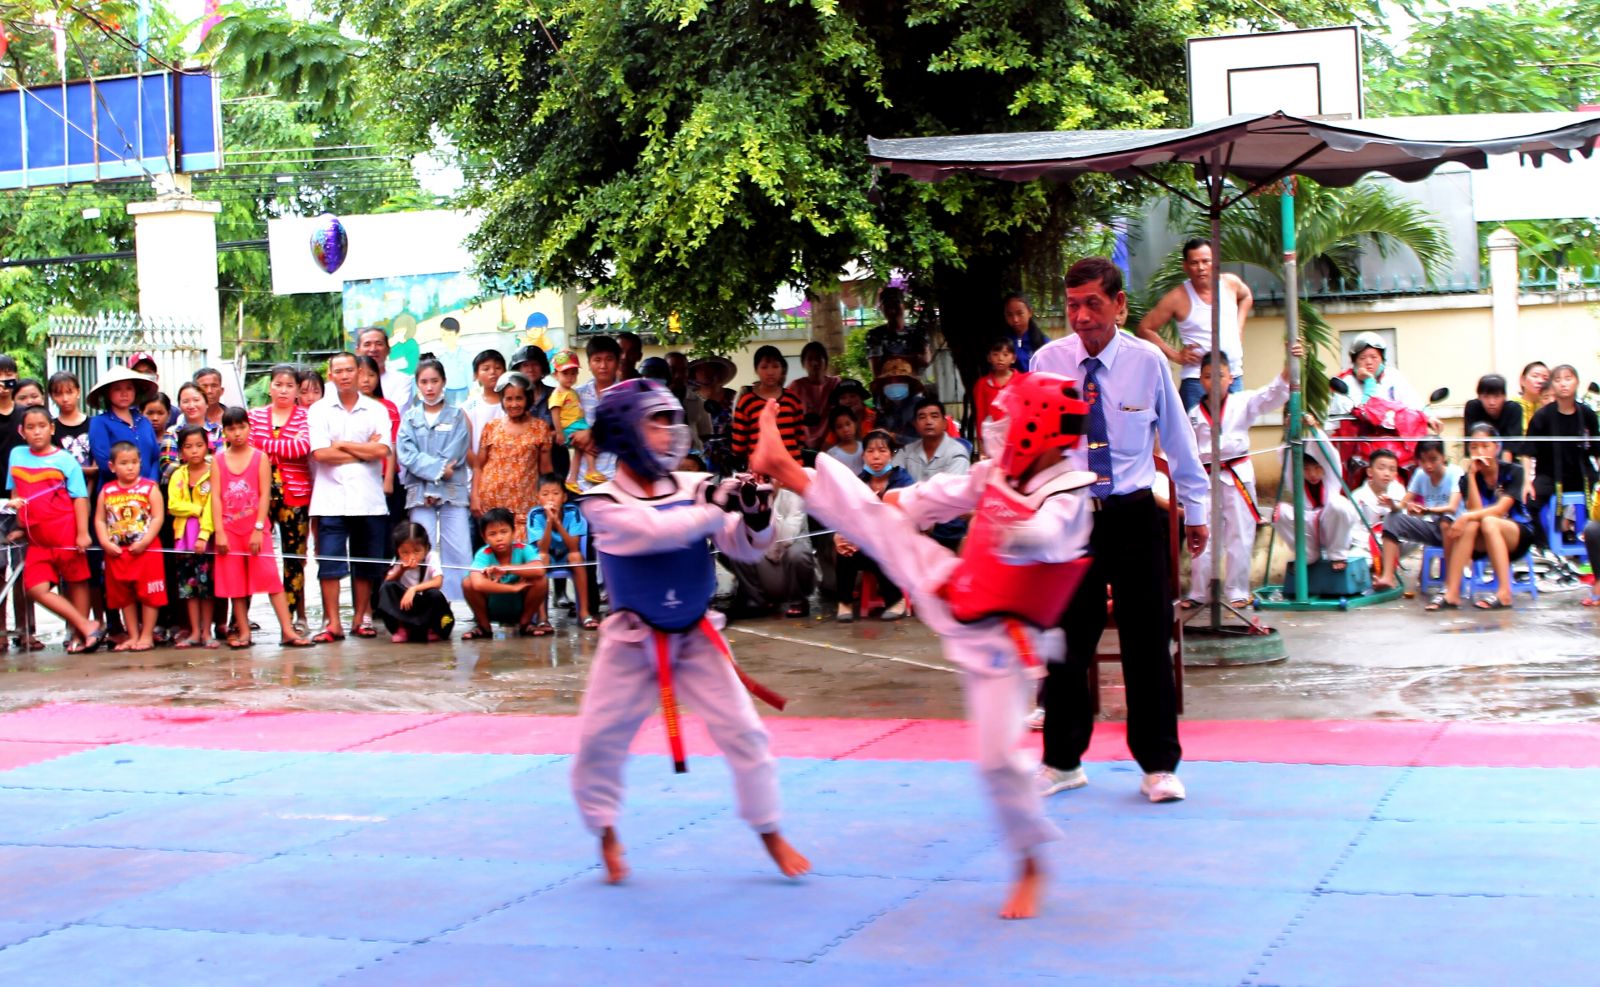 Giải Vô địch Taekwondo cấp thành phố được tổ chức tại lễ hội, góp phần tạo không khi sôi nổi, hào hứng với những trận đấu hấp dẫn.